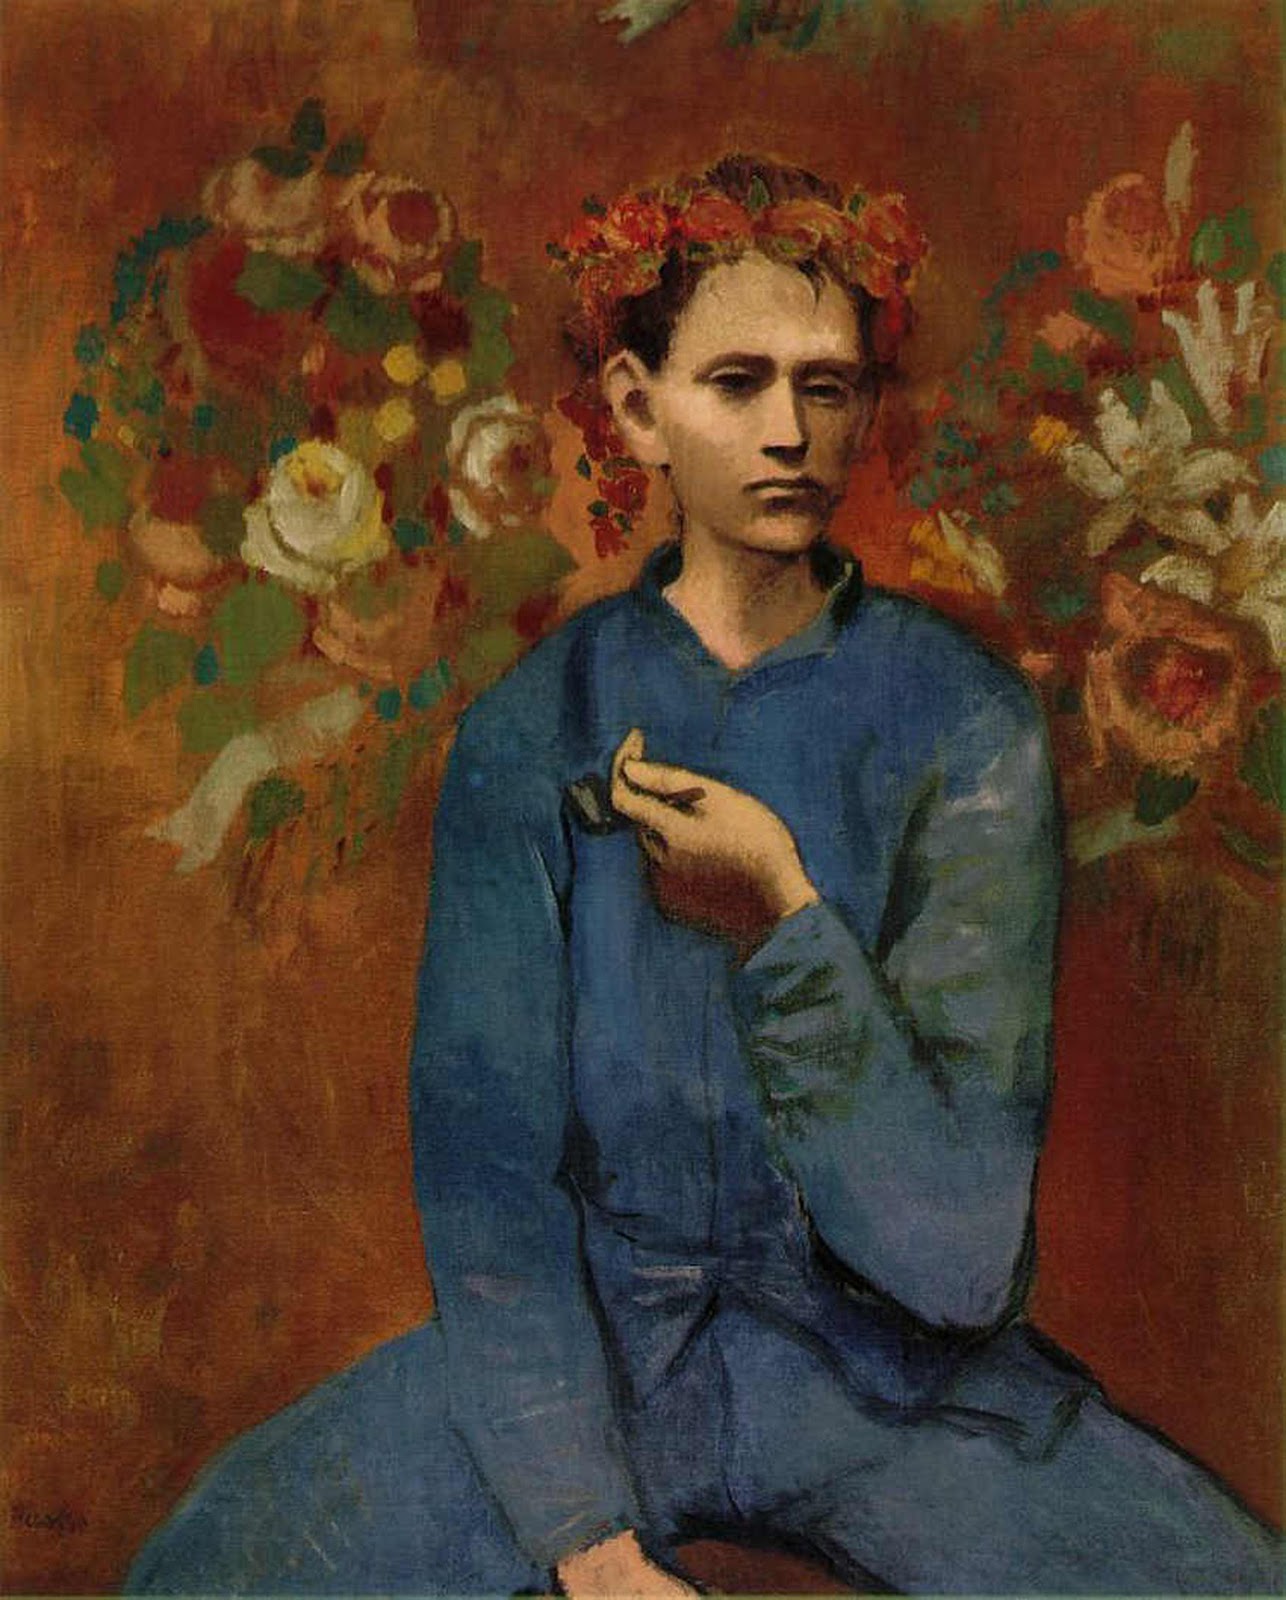 Garçon à la pipe by Pablo Picasso - 1905 - 100 × 81.3 cm collection privée